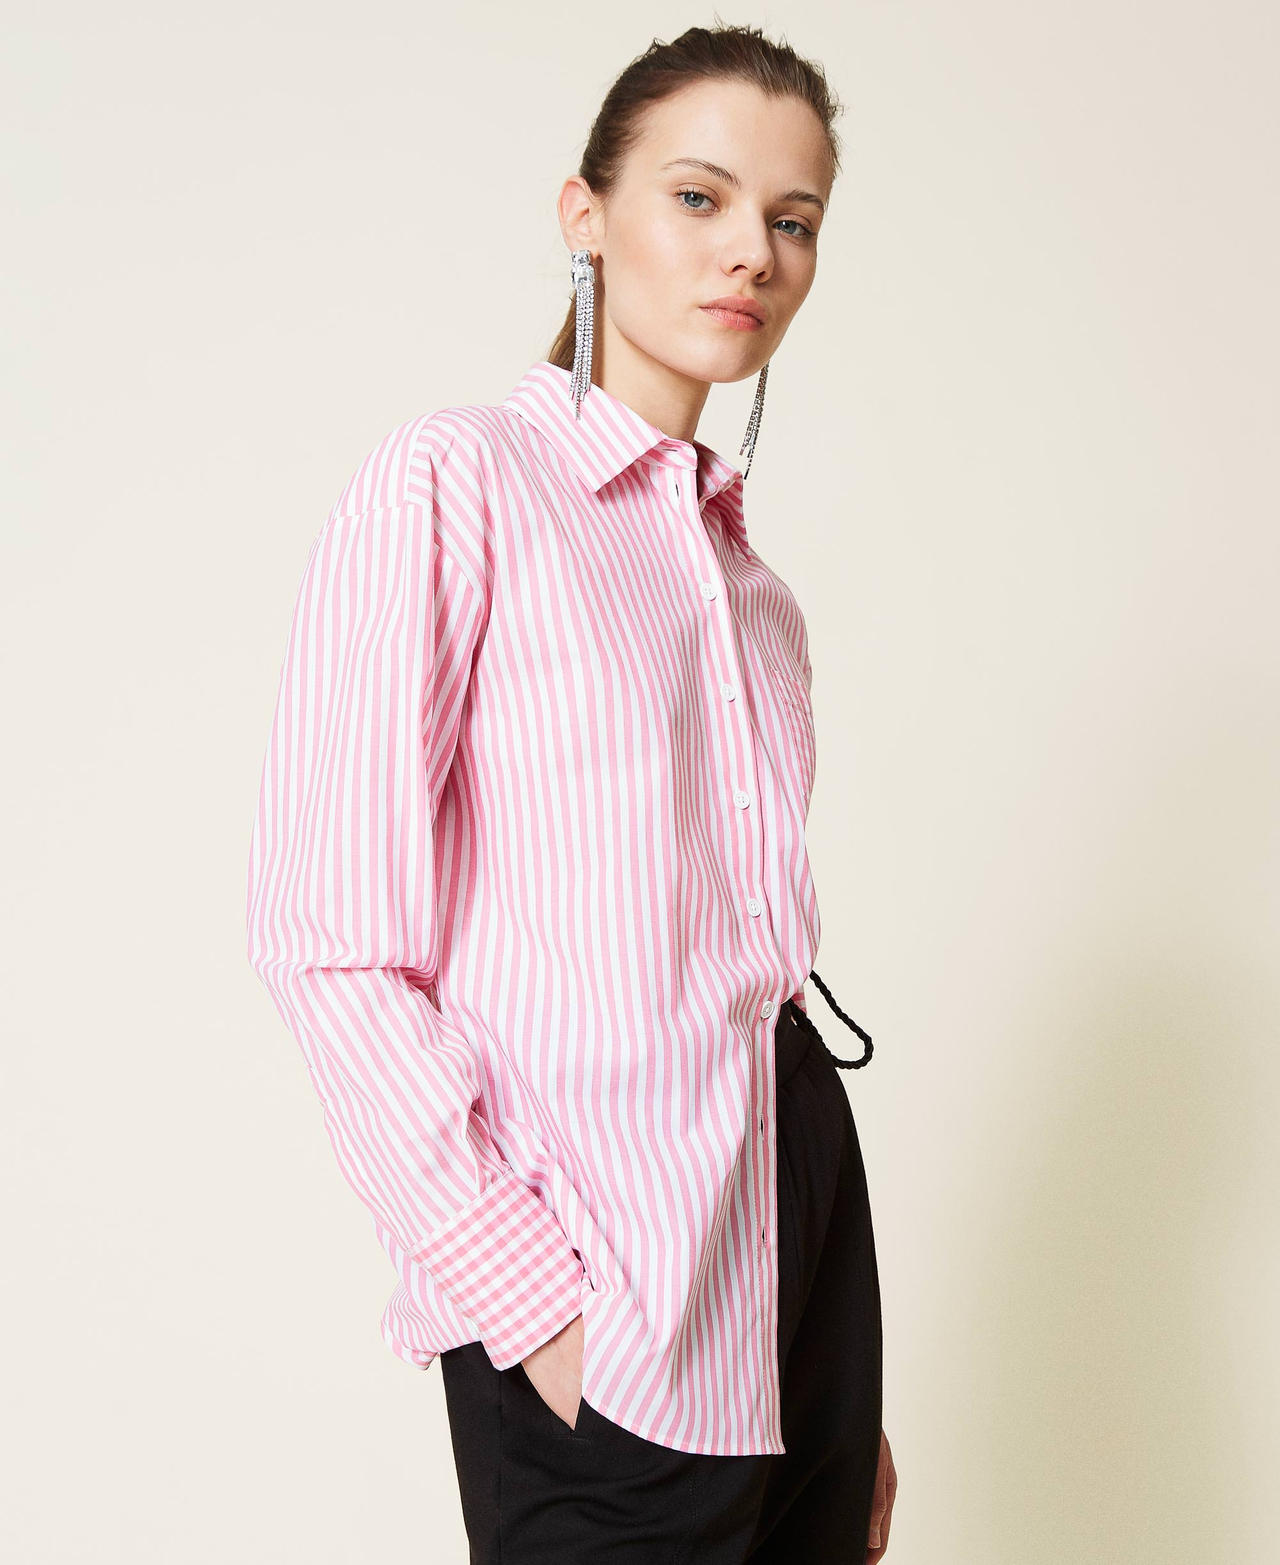 Camicia a righe con inserti Vichy Bicolor Off White / Rosa "Hot Pink" Donna 221AT2251-03